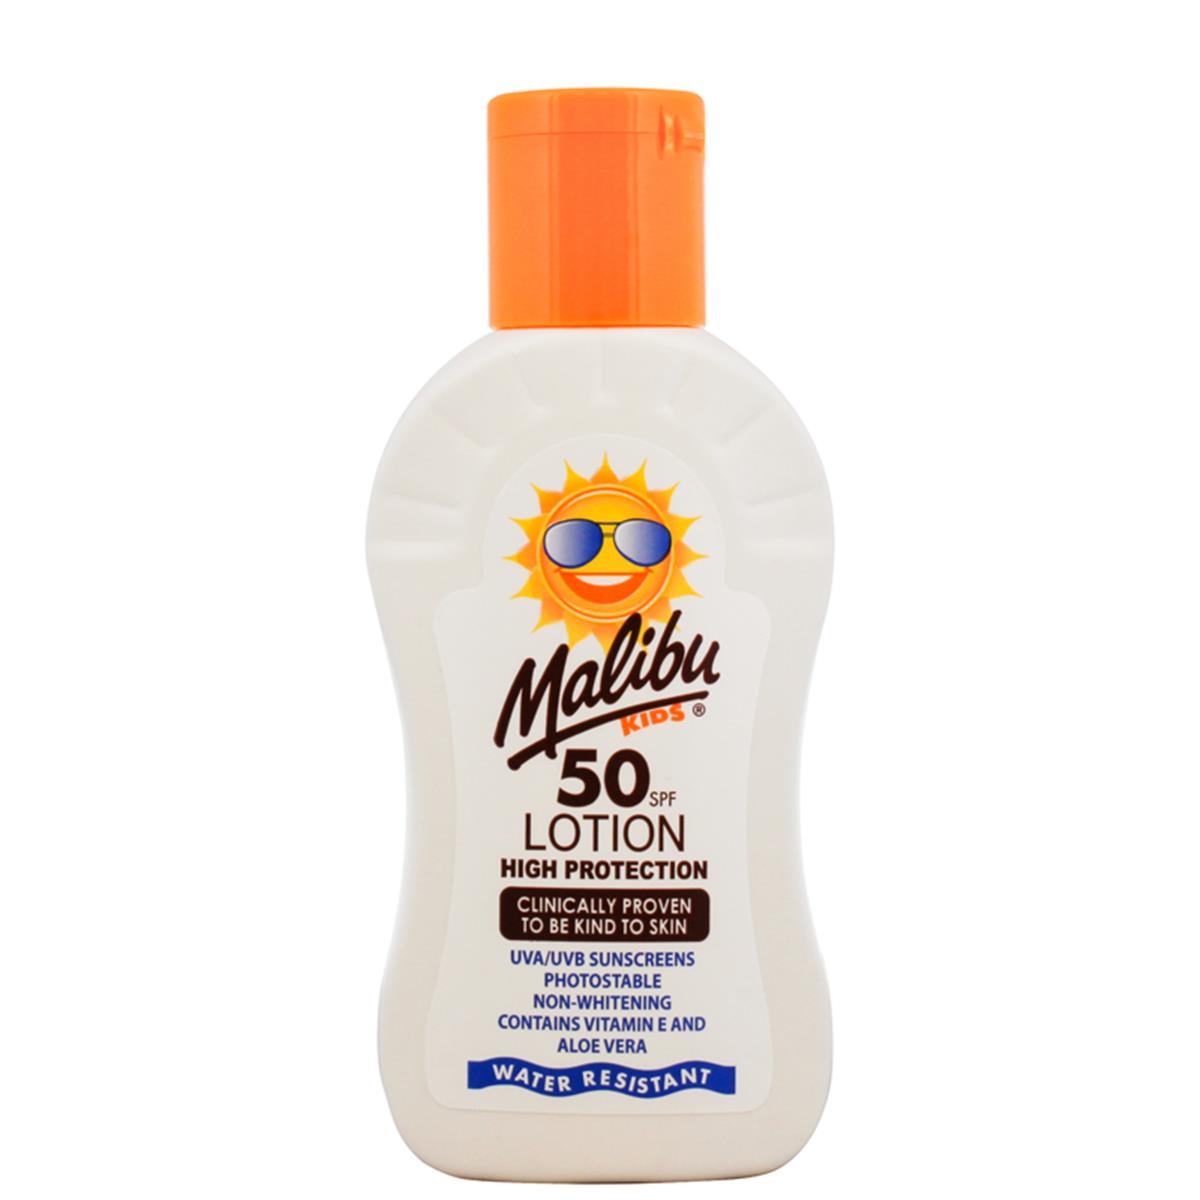 Malibu 100 ml SPF 50 kids lotion